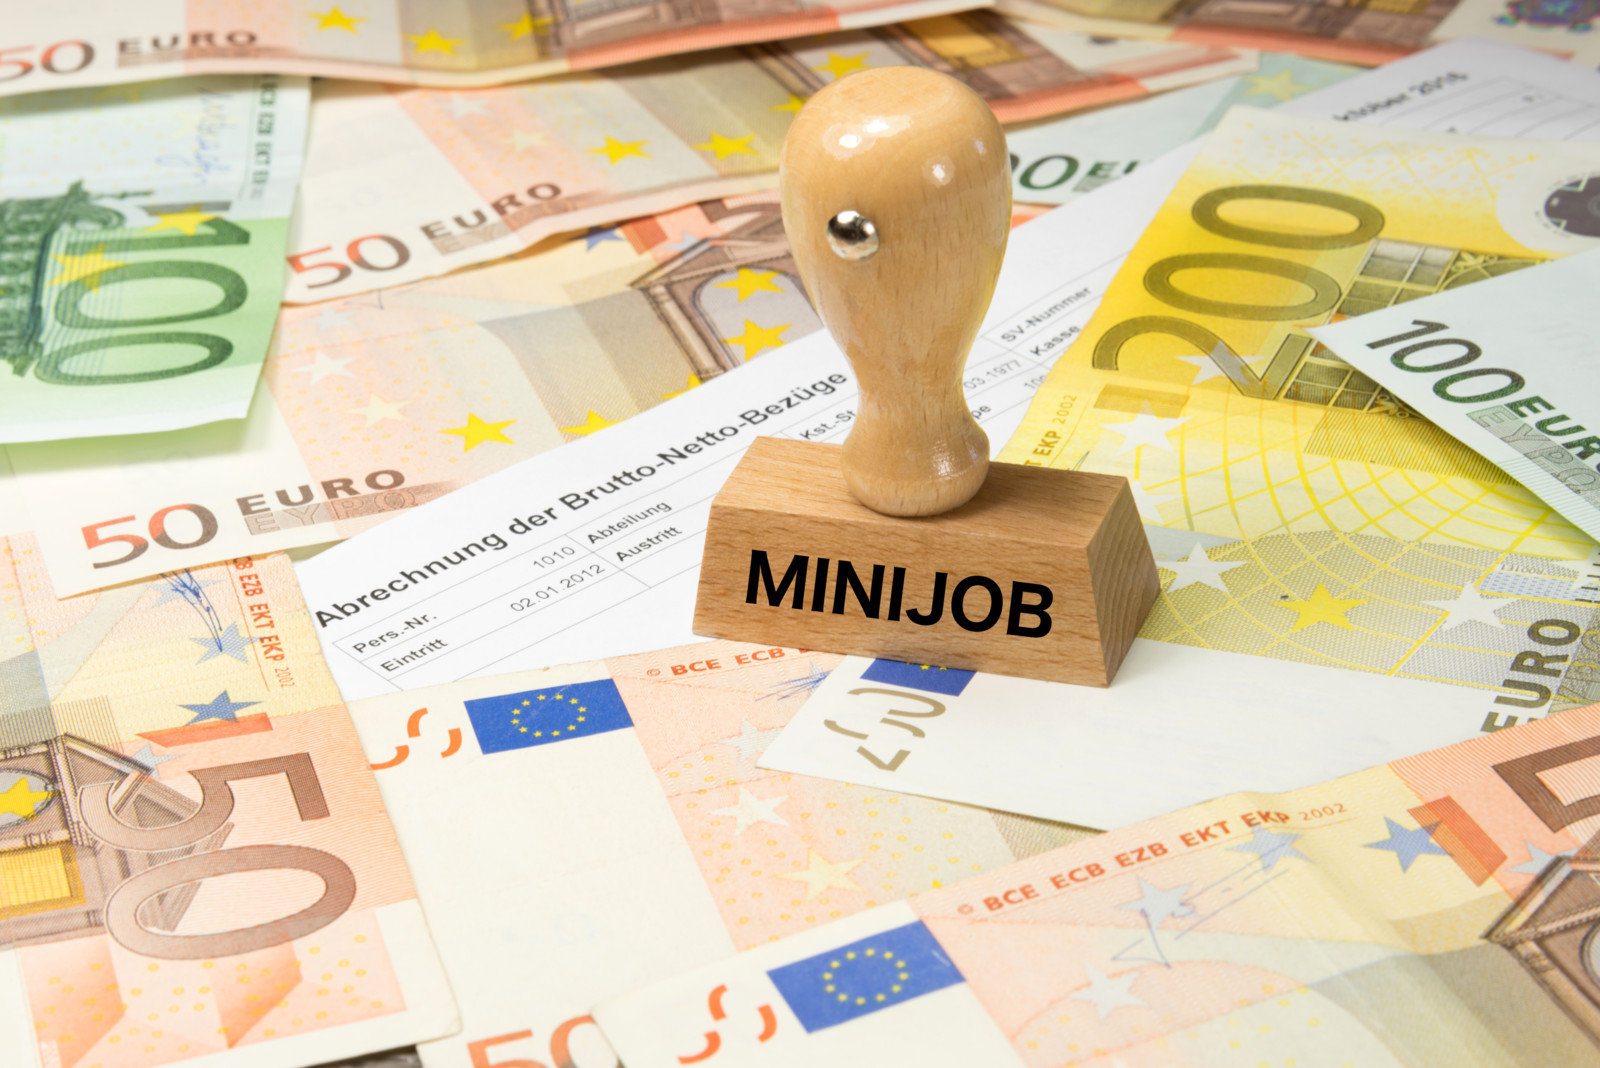 Hauptbeschäftigung plus Minijob: Beschäftigte können die Inflationsprämie laut Minijob-Zentrale mehrfach von verschiedenen Arbeitgebern erhalten.